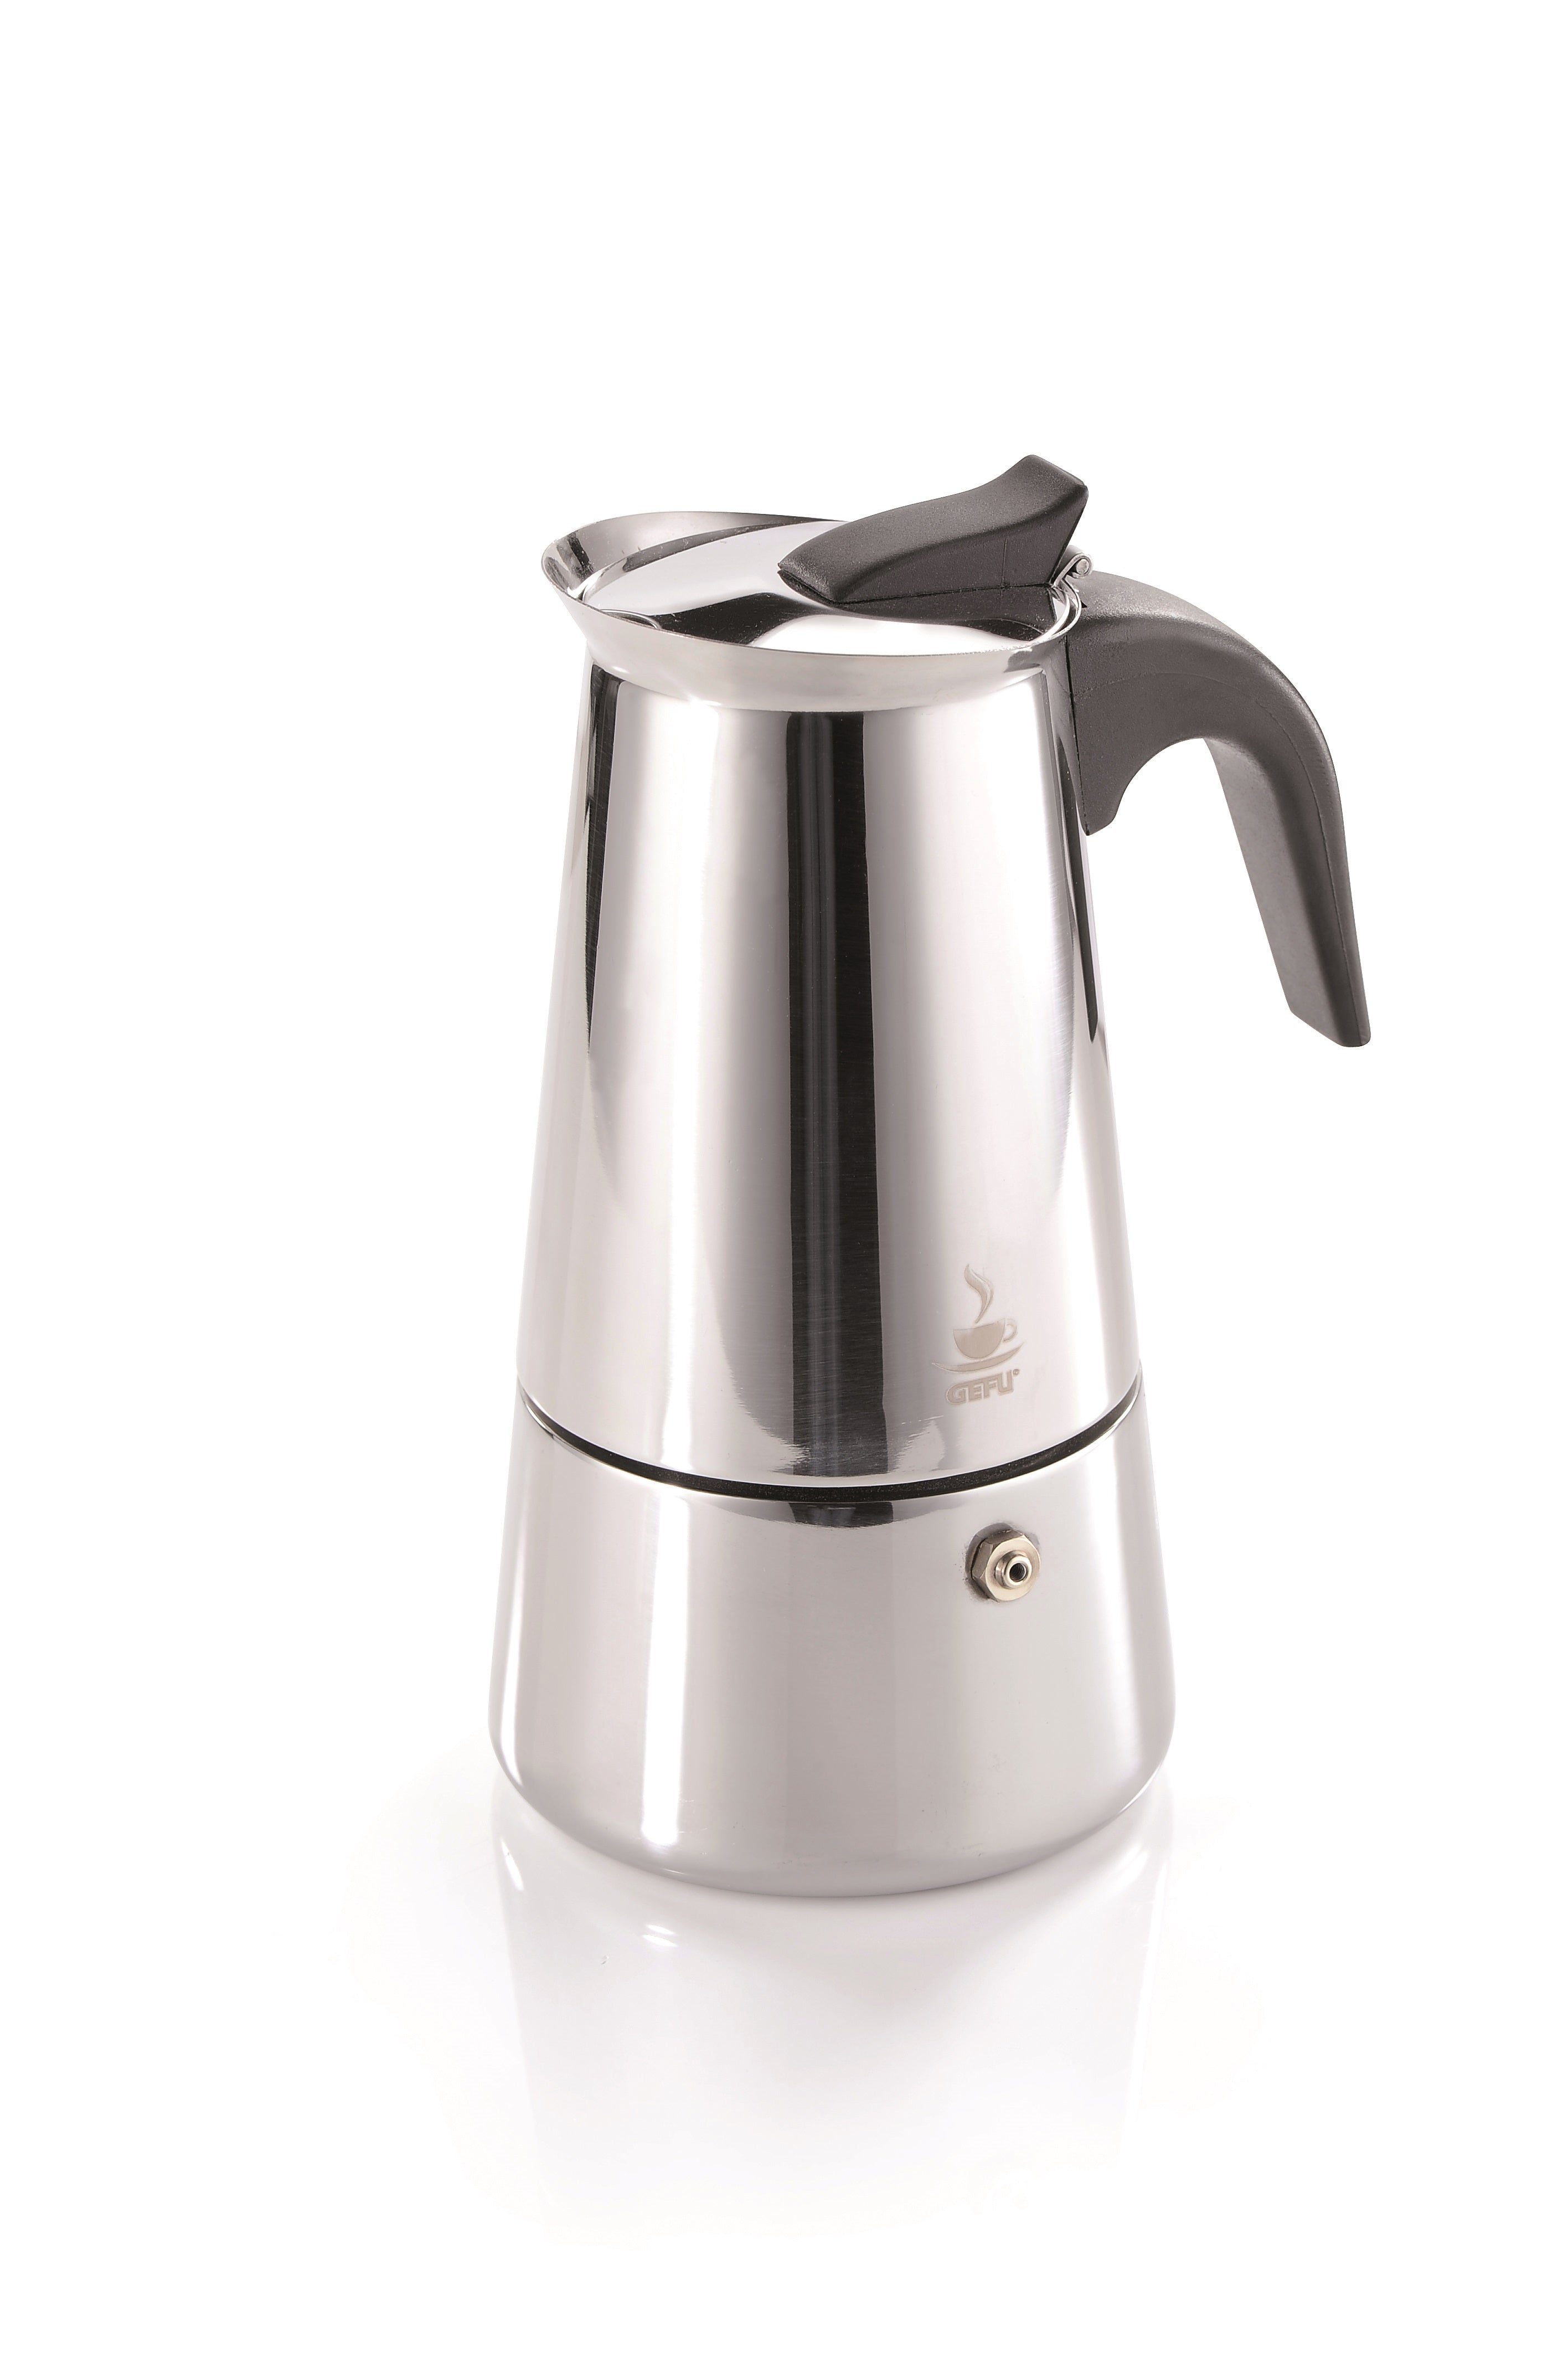 GEFU Espresso Maker Stainless Steel EMILIO 4 Cup 16150